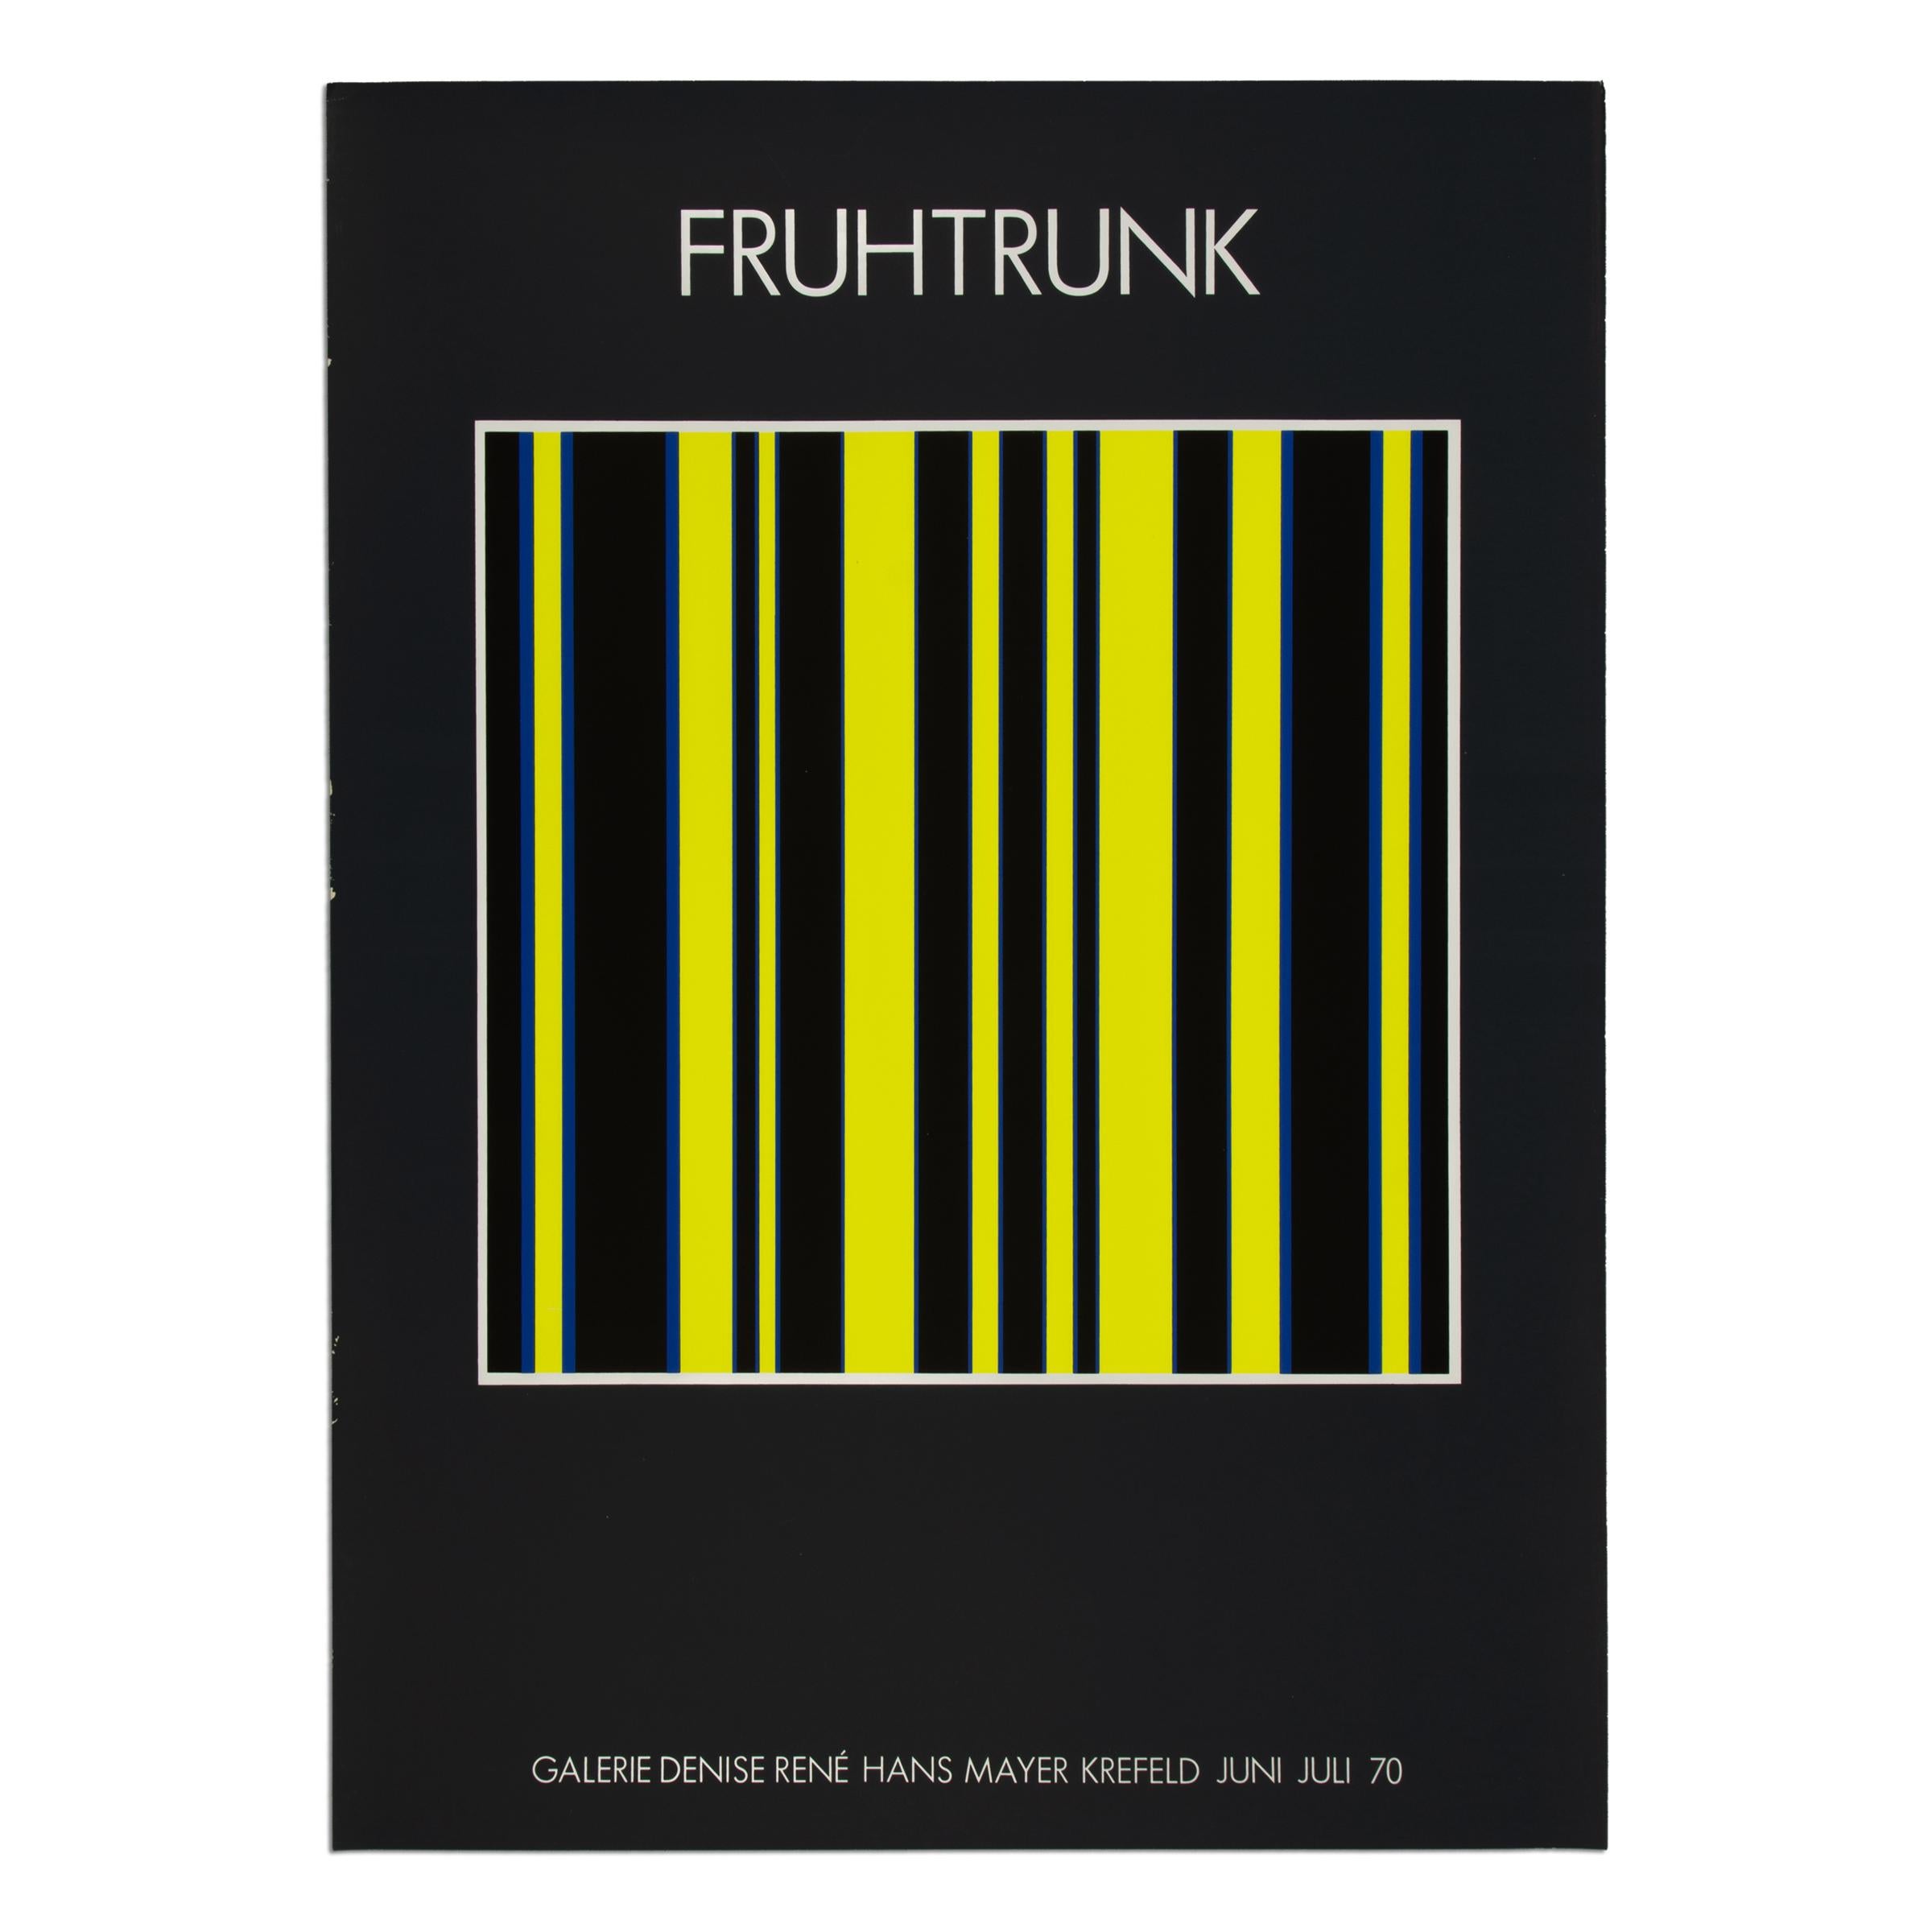 Gunter Fruhtrunk Abstract Print - Günter Fruhtrunk - Original Exhibition Poster from 1970, Screenprint